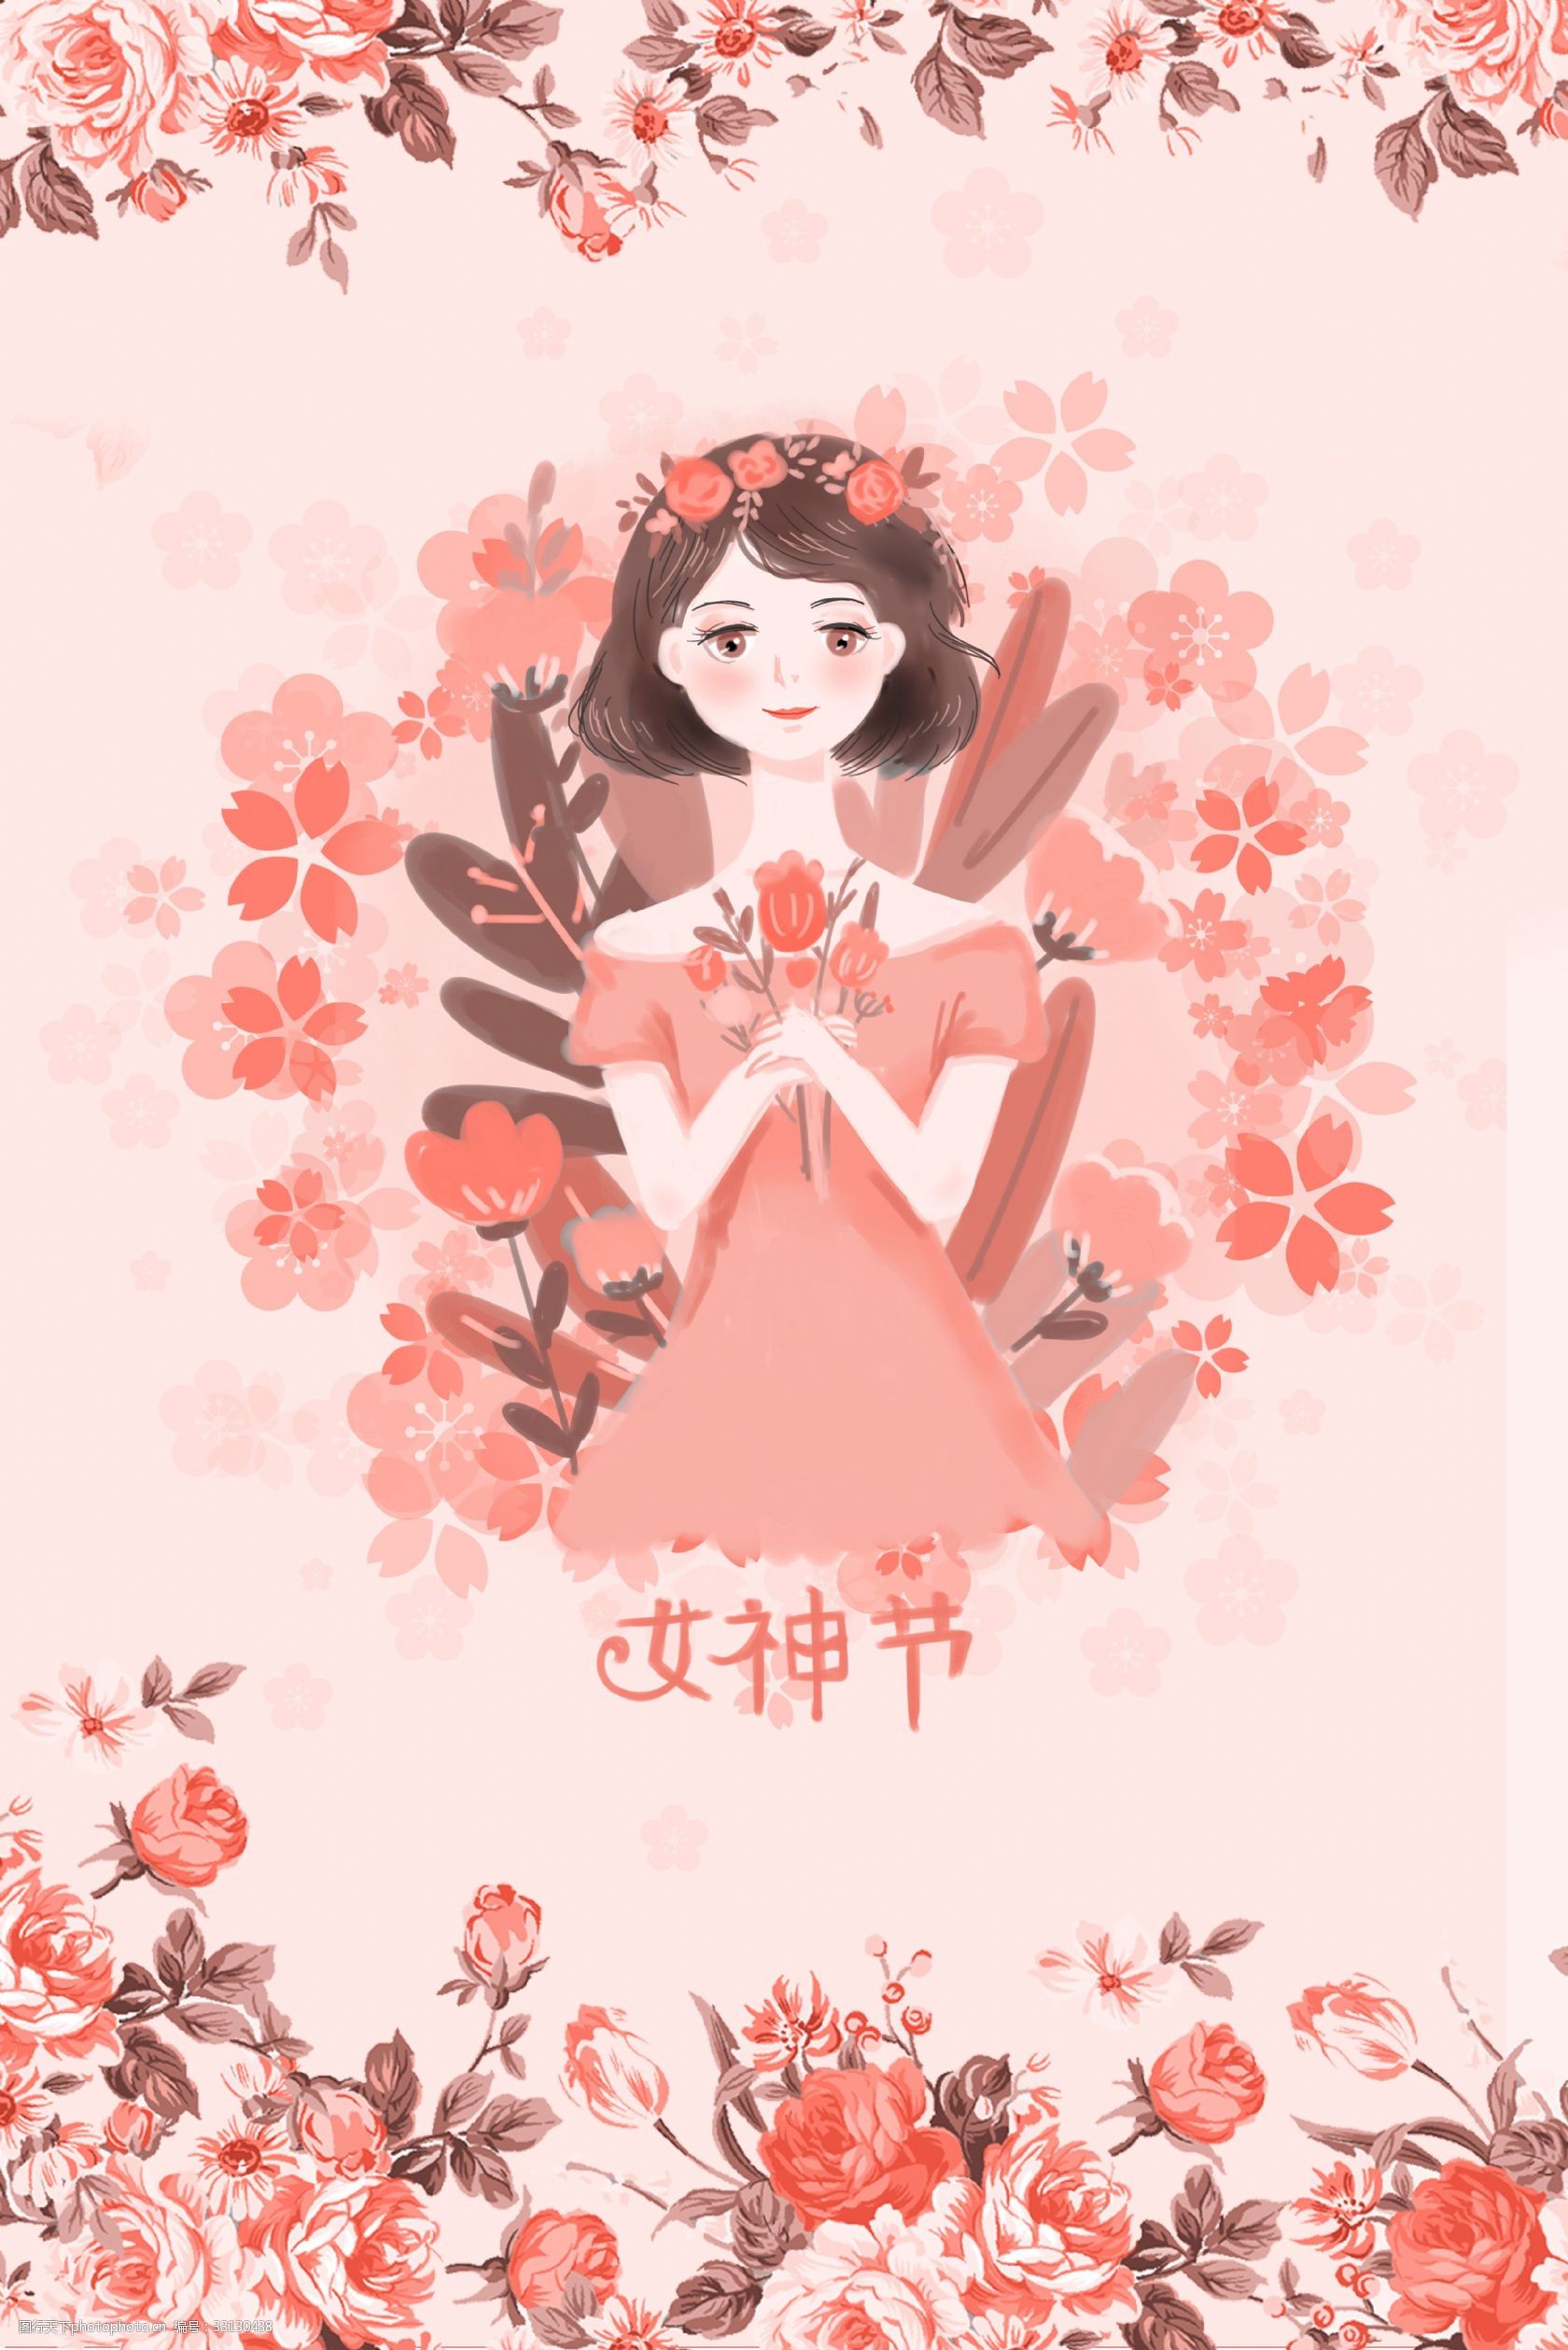 关键词:温馨粉色花卉女神节海报背景 粉色 人物 温馨 文艺 清新 卡通